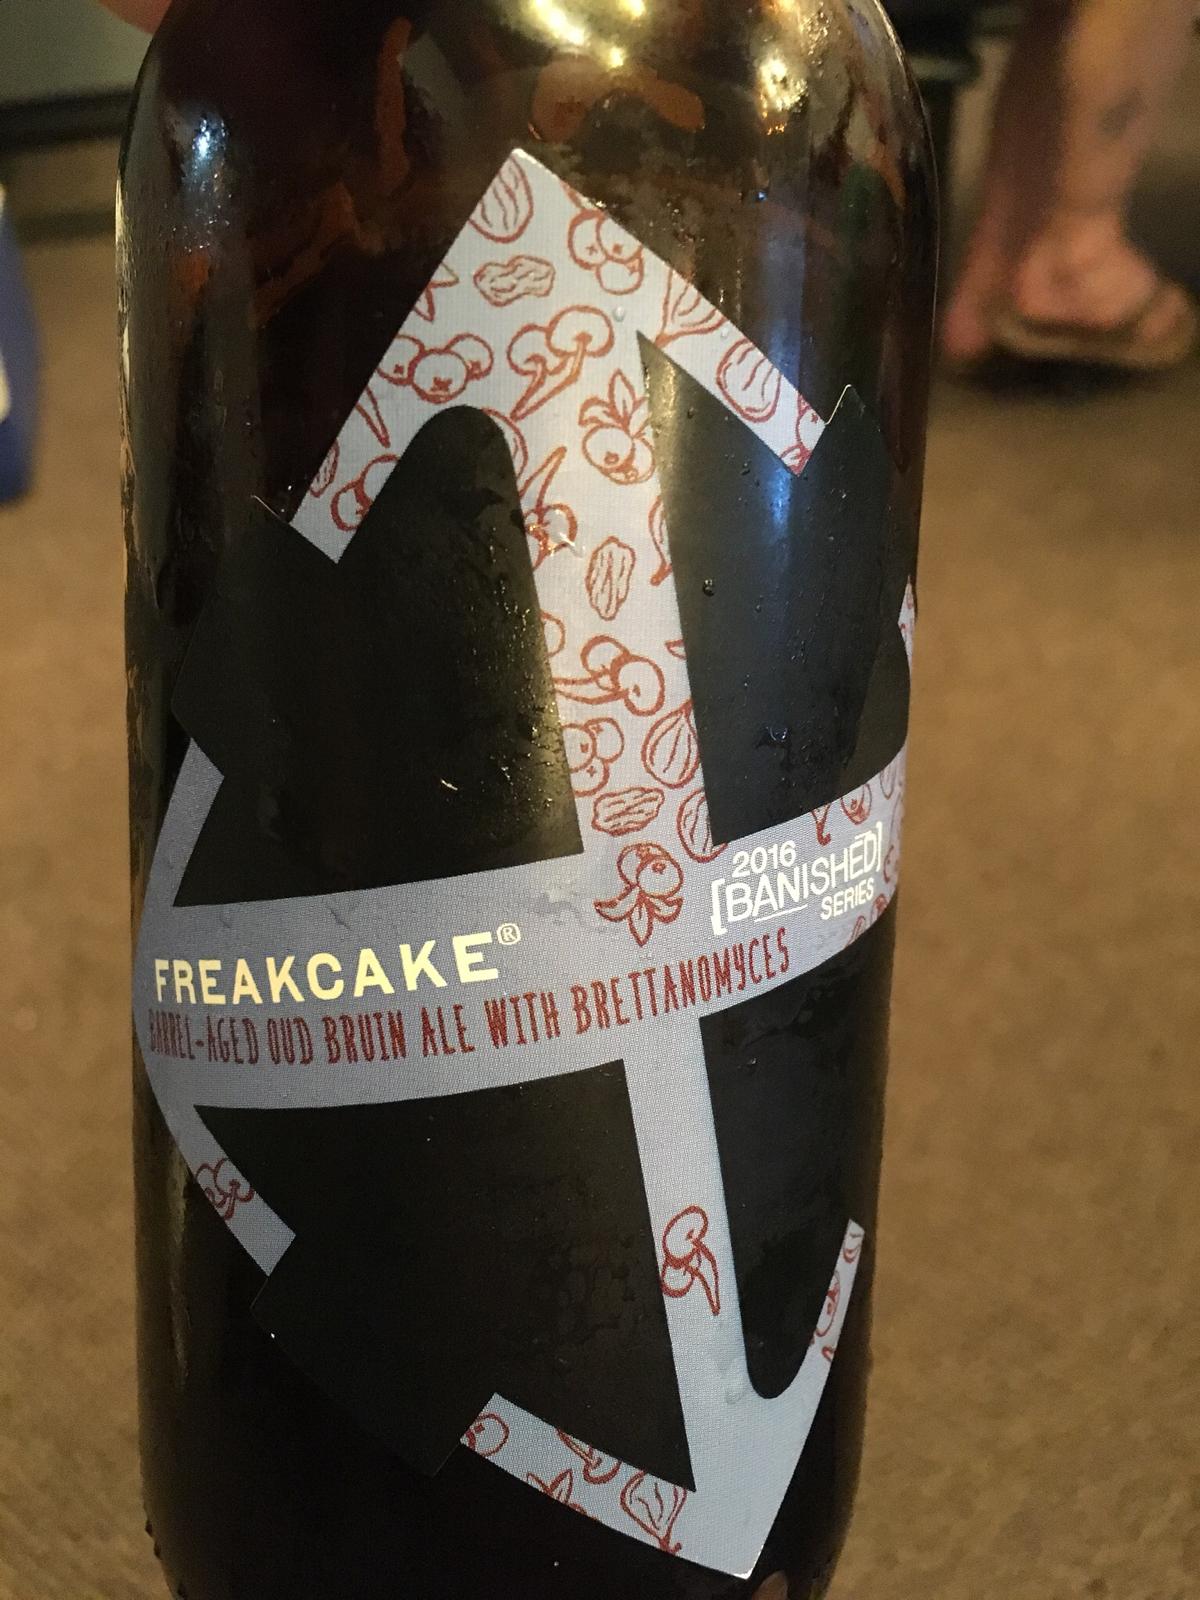 Freakcake #1 - Barrel-aged Oud Bruin Ale